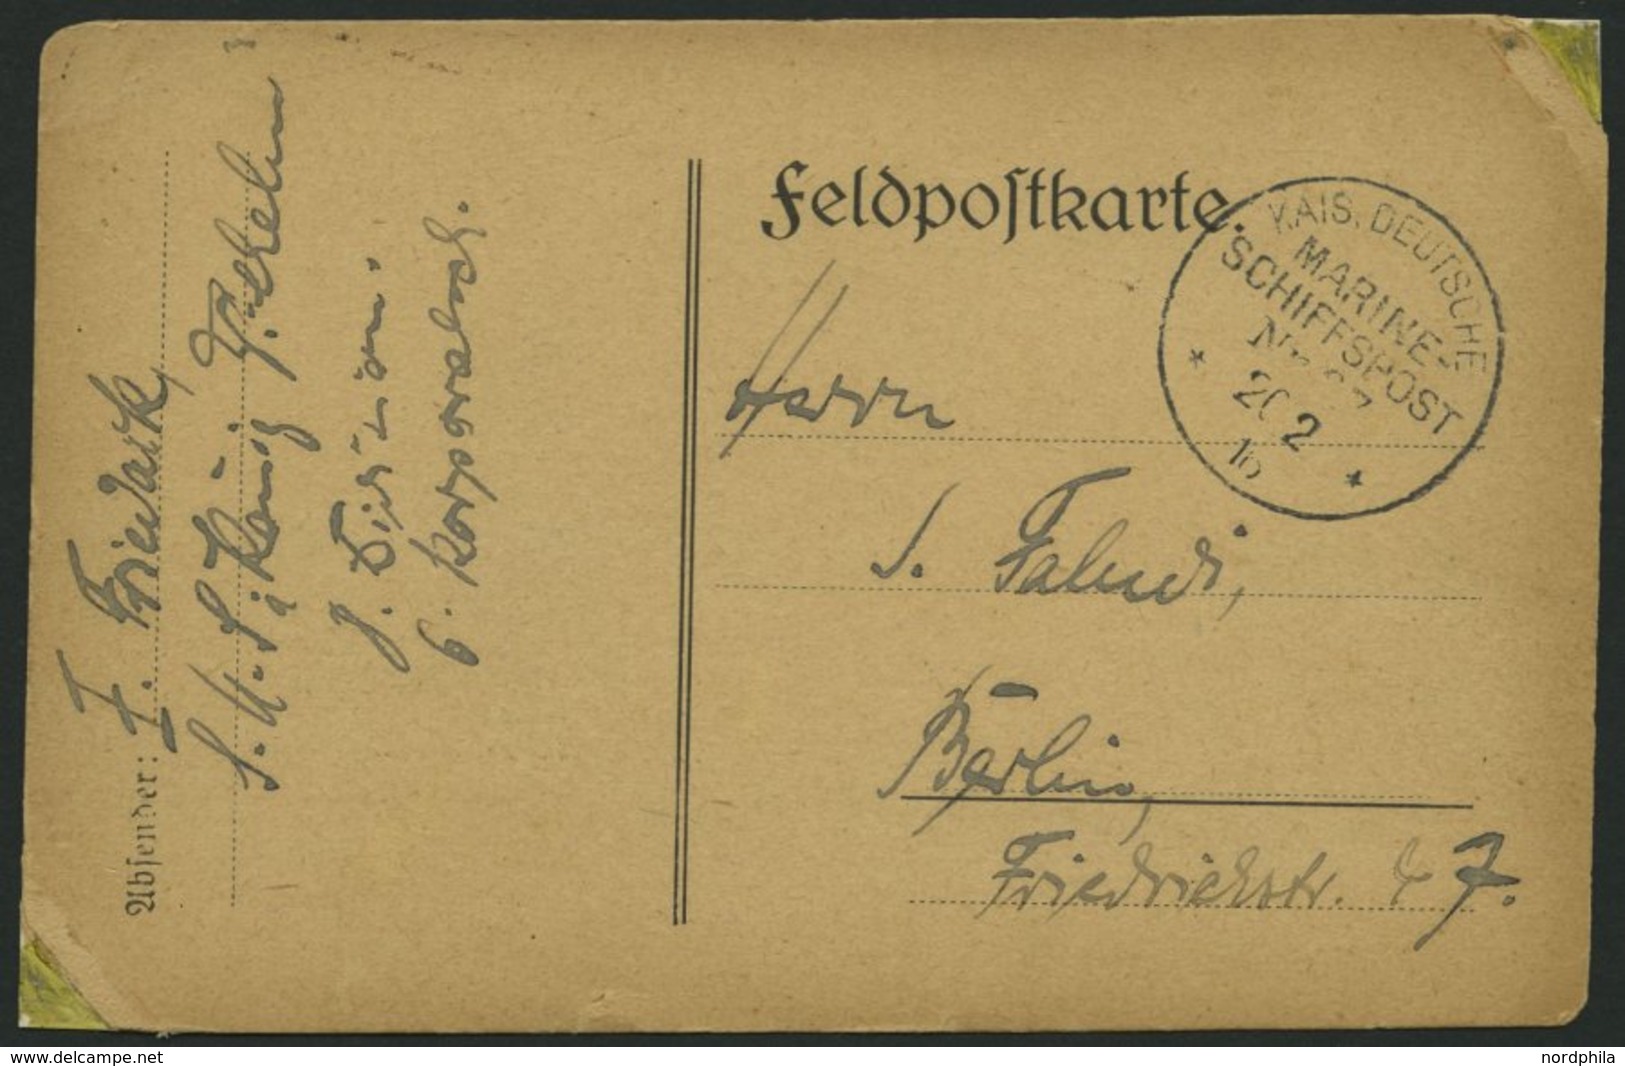 MSP VON 1914 - 1918 97 (Großer Kreuzer KÖNIG WILHELM), 20.2.1916, Feldpostkarte Von Bord Der König Wilhelm (Wohn-und Exe - Maritime